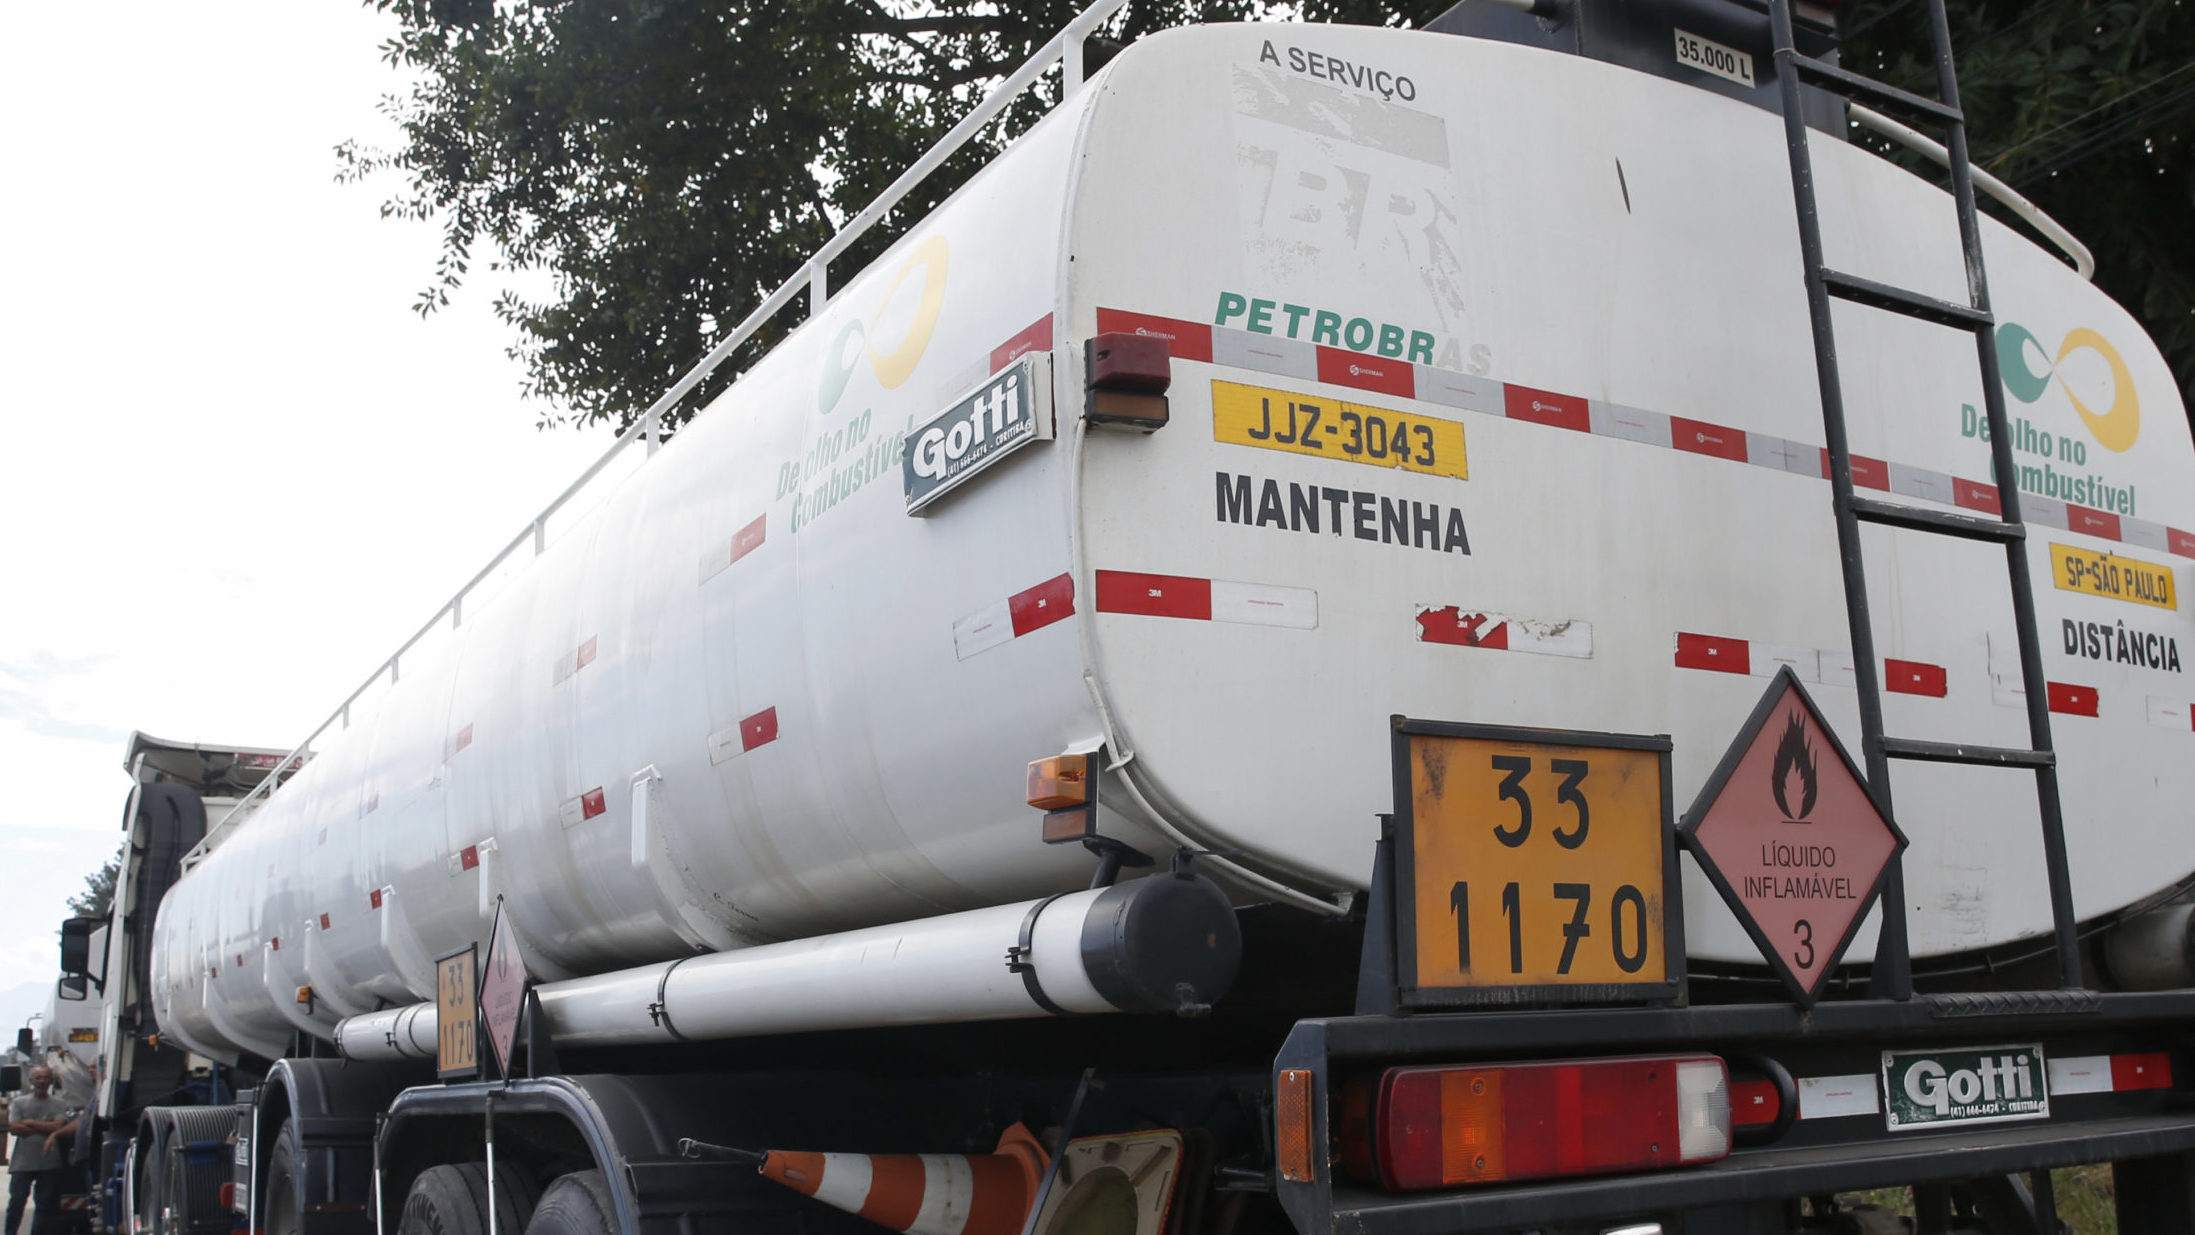 Desabastecimento de diesel, riscos segundo Petrobras, MME e consultorias. Na imagem, caminhão tanque abastece na Refinaria Duque de Caxias (Reduc), no Rio de Janeiro (Foto: Tânia Rego/Agência Brasil)